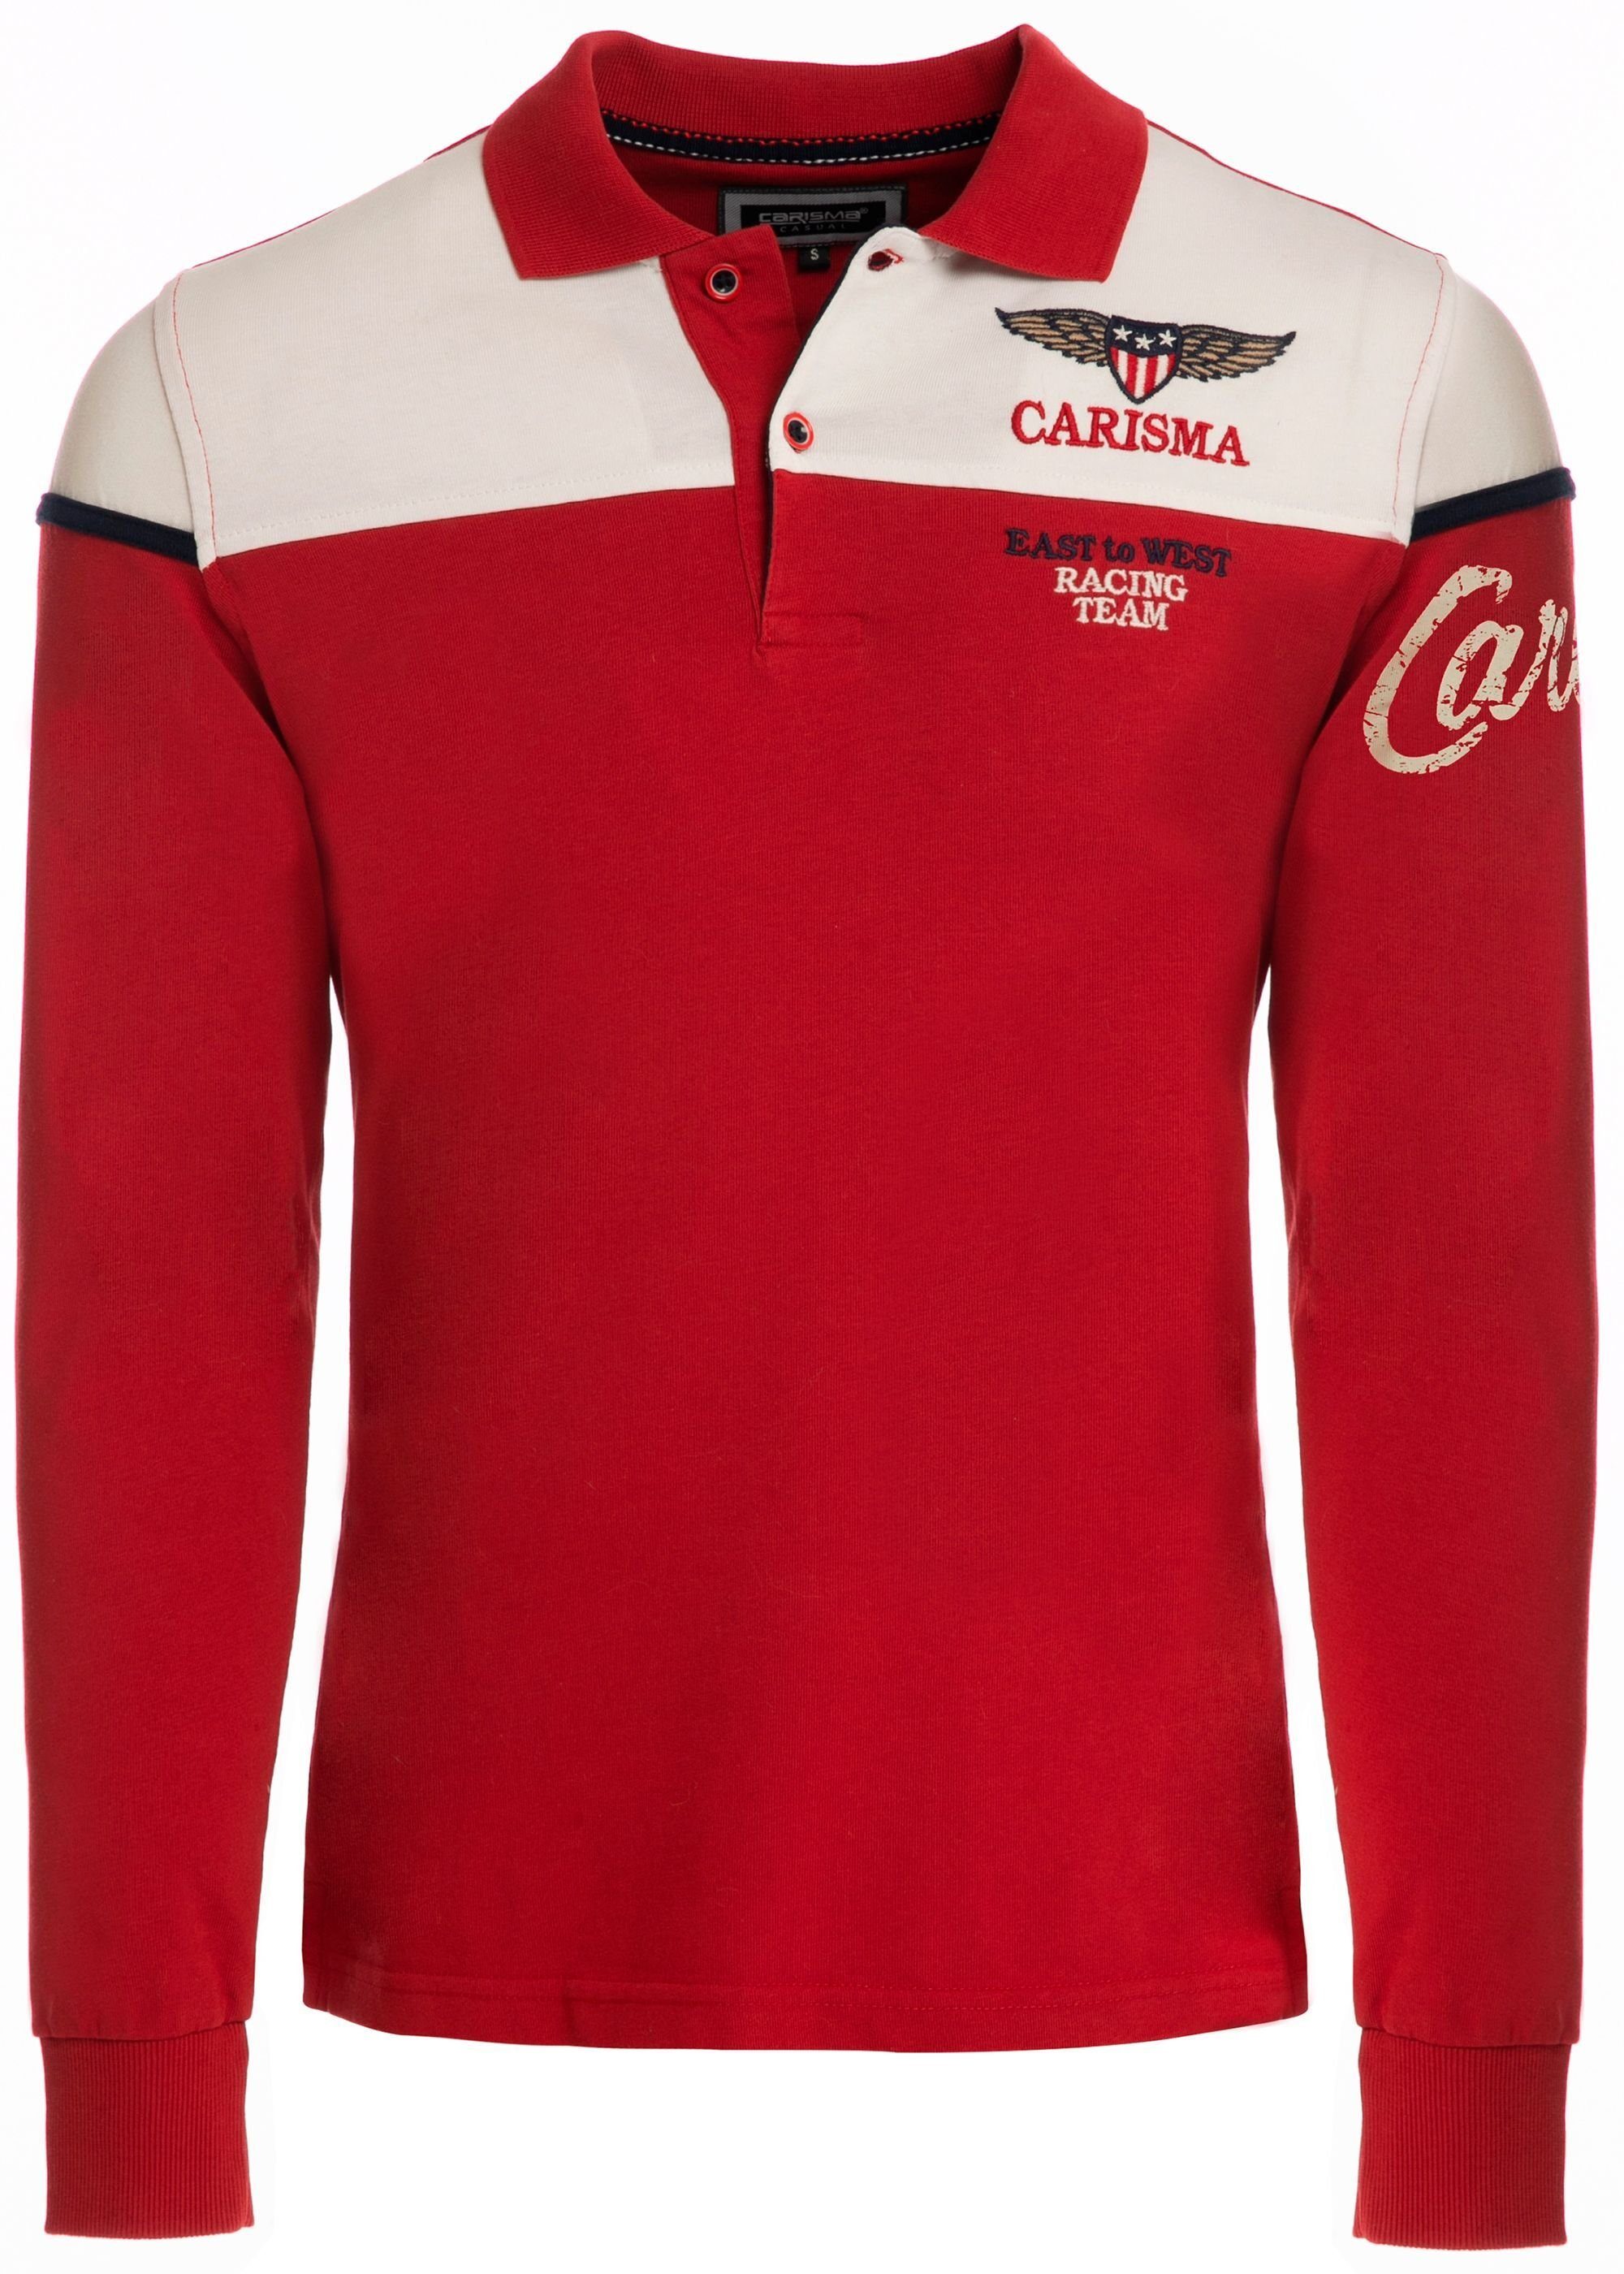 CARISMA Poloshirt mit Stickerei Rugby Team Red